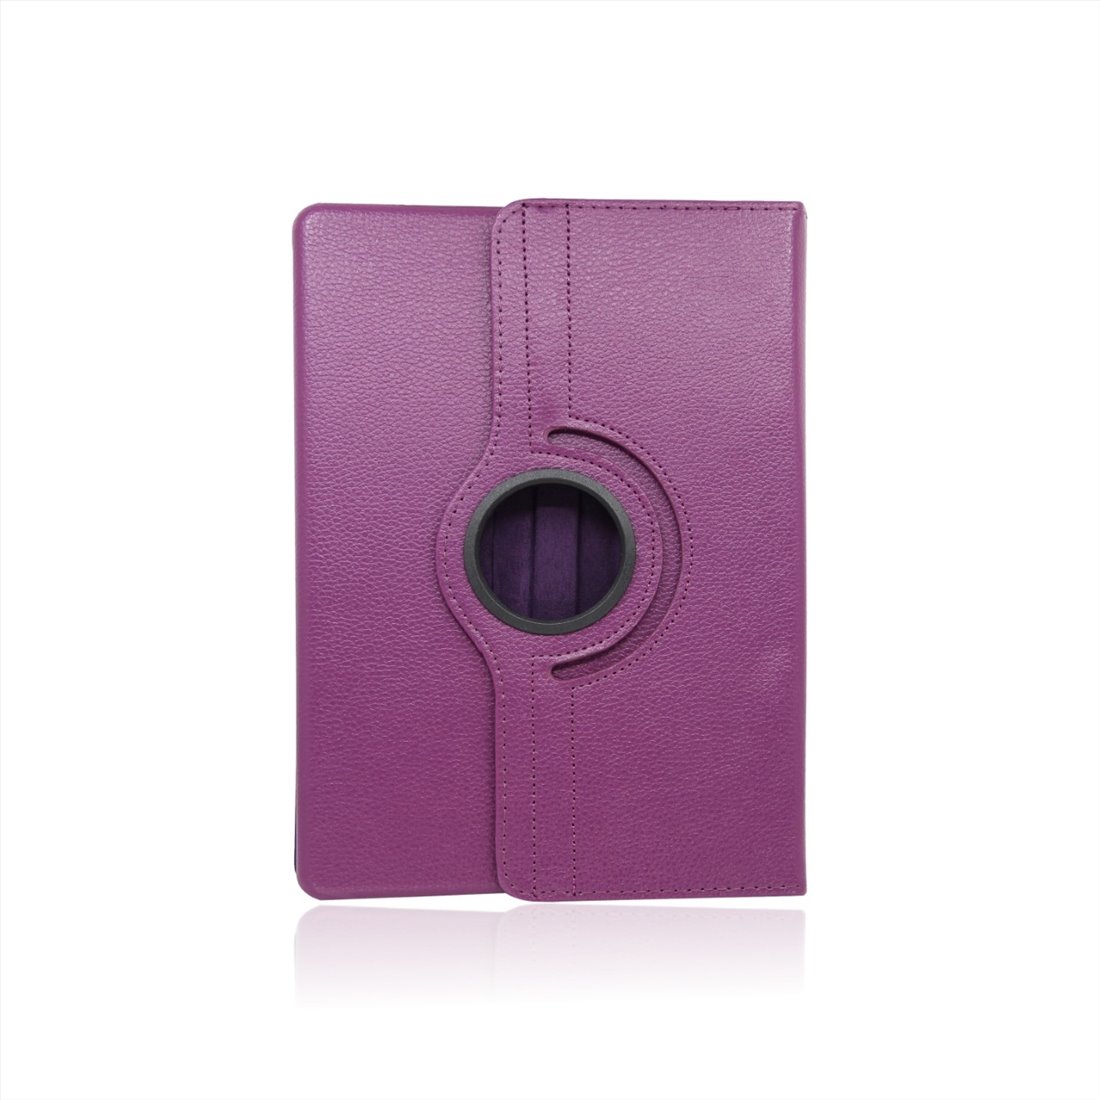 Apple iPad 2/3 artificial leather Purple Book Case Tablet